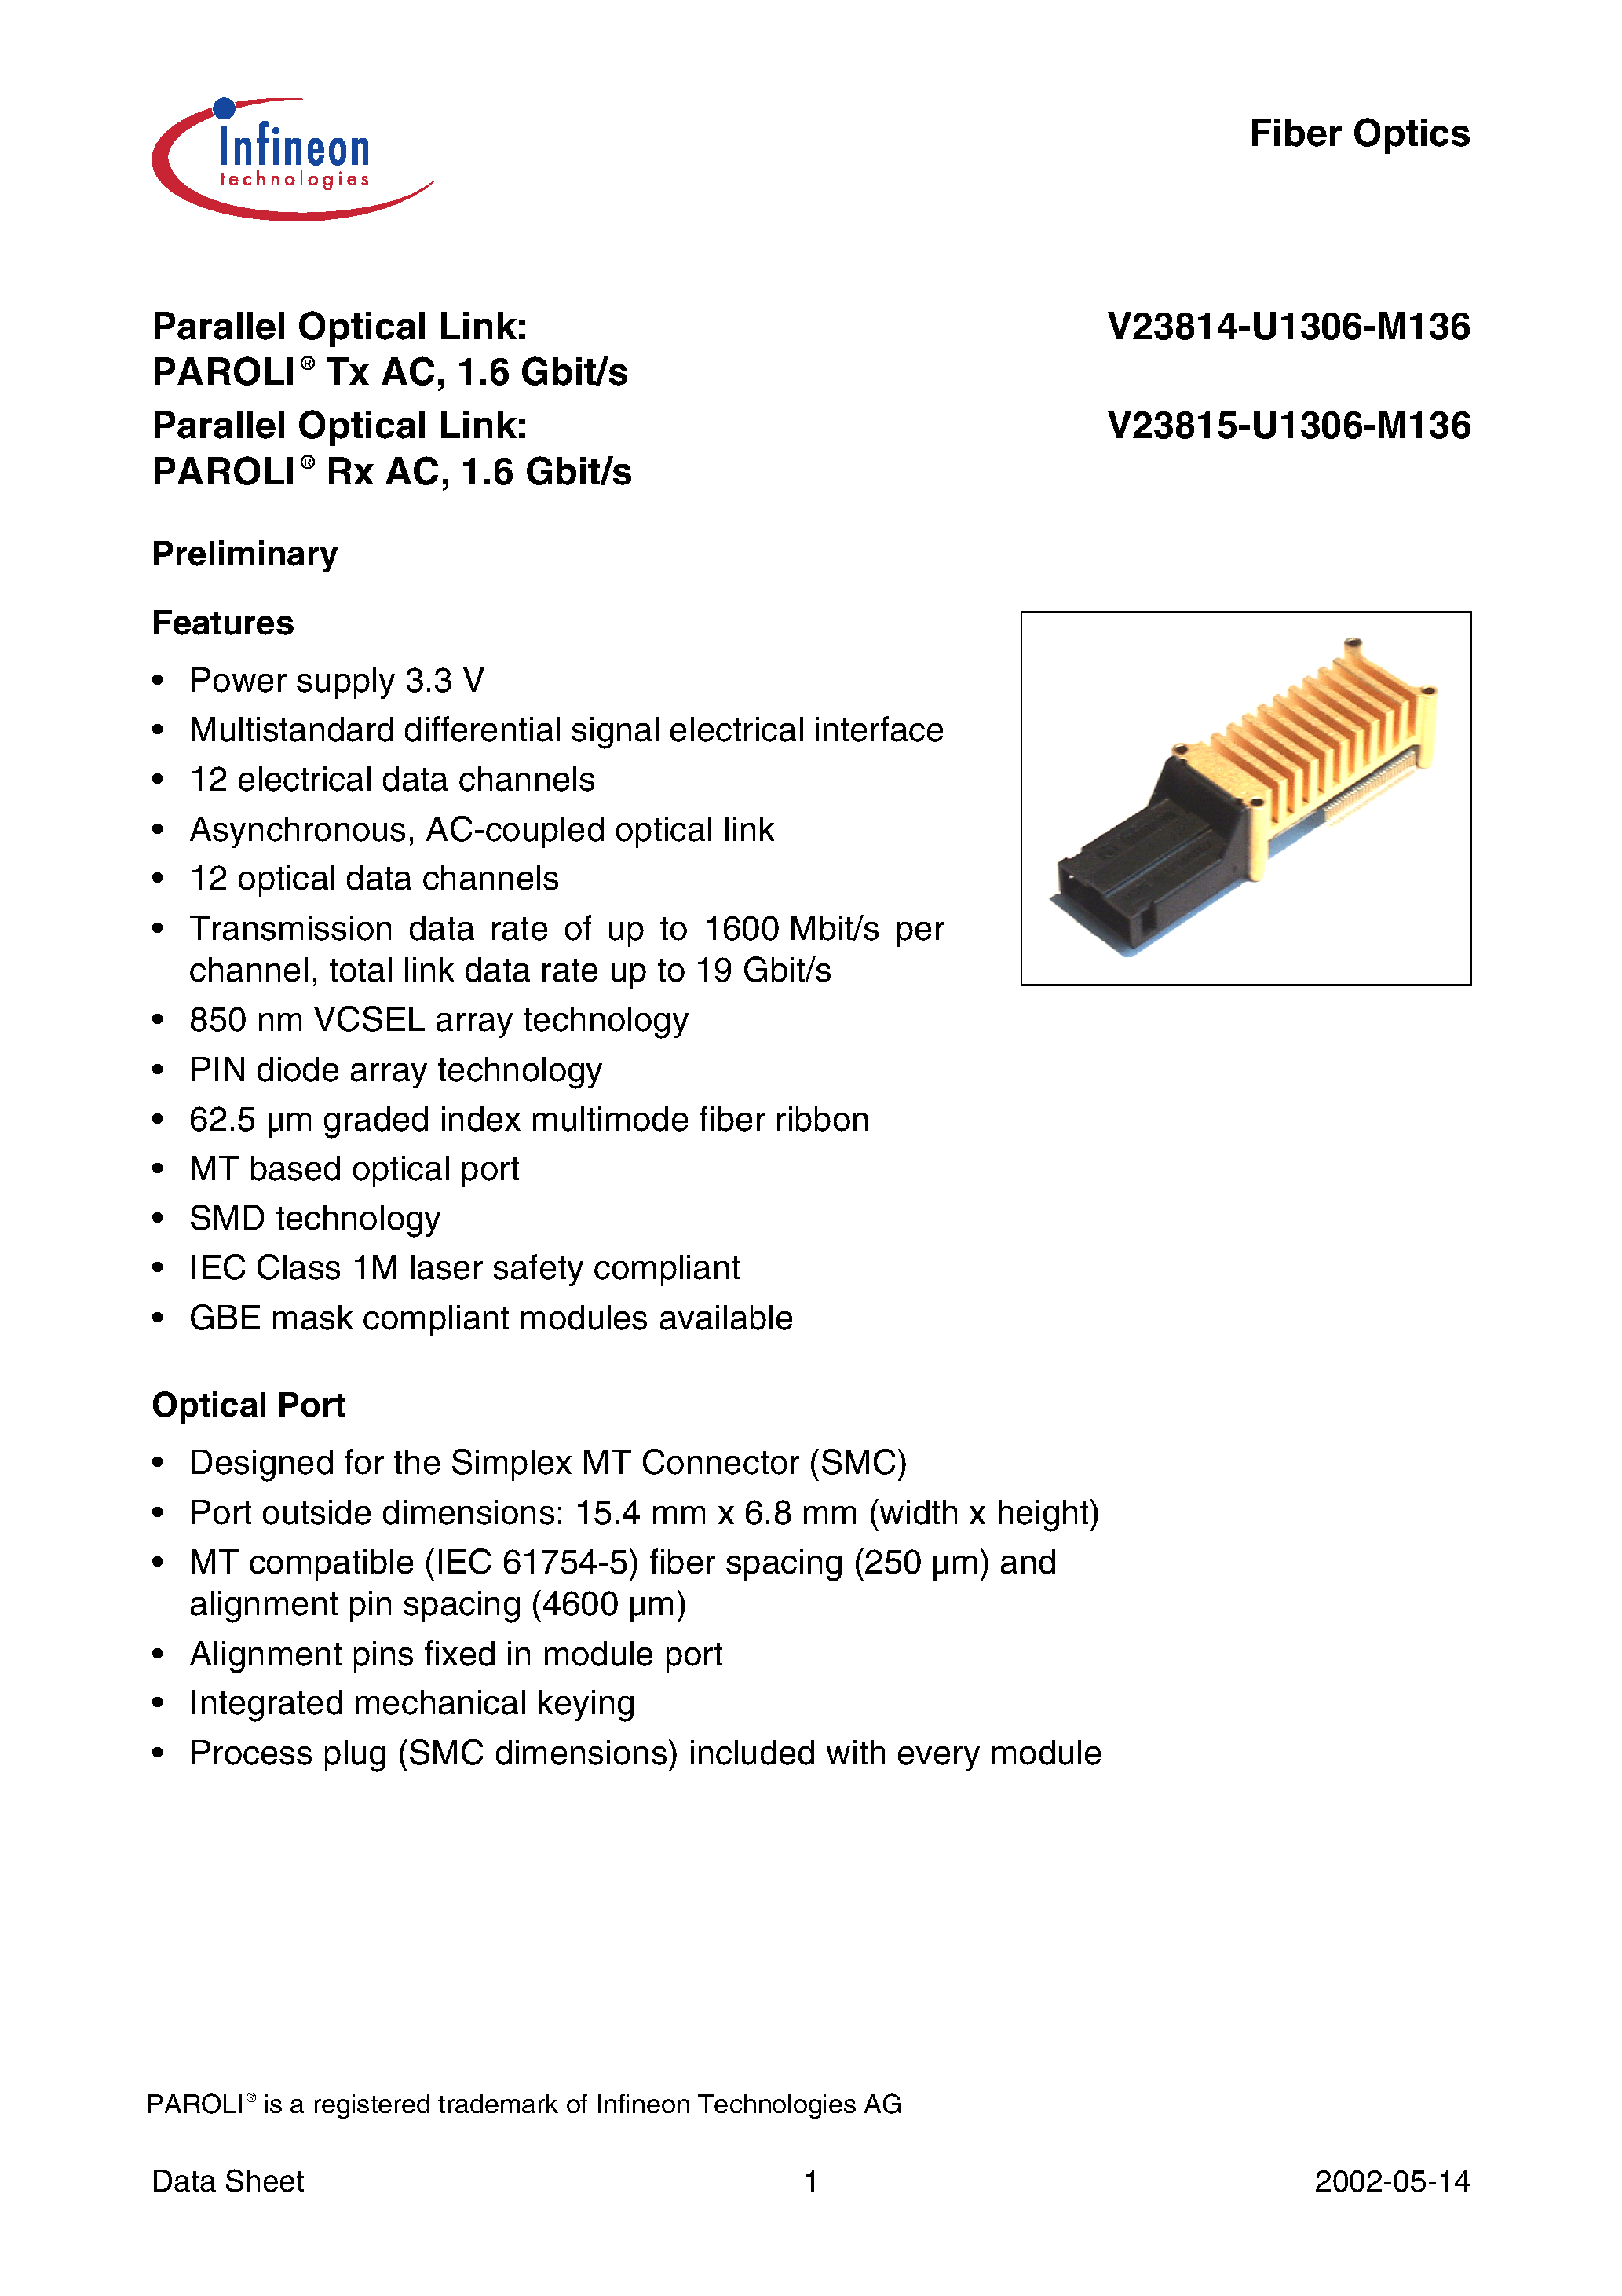 Datasheet V23815-U1306-M136 - PAROLI Tx AC/ 1.6 Gbit/s page 1